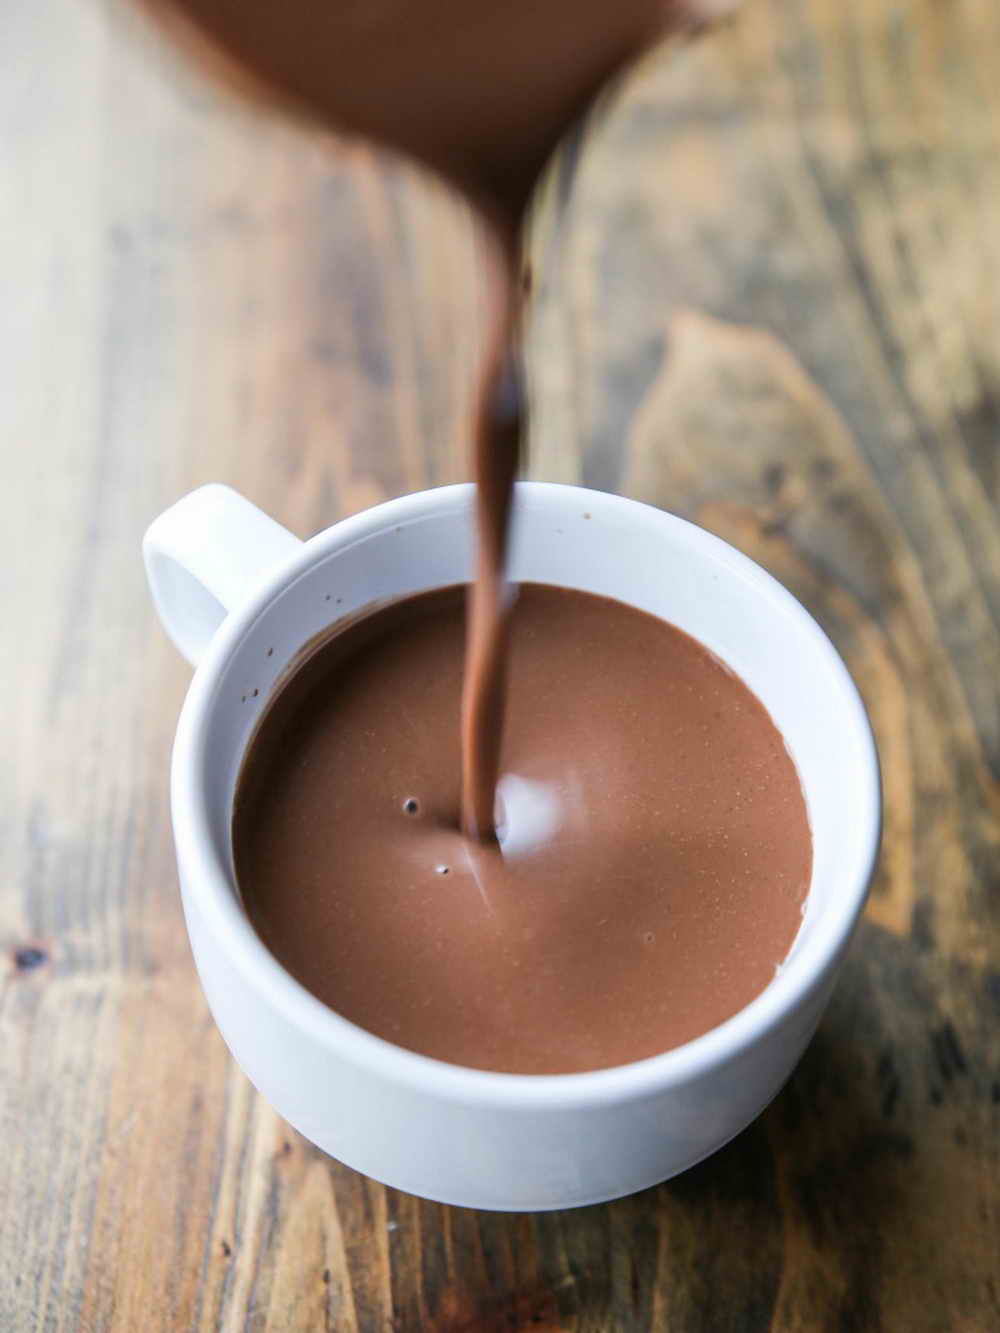 ผงช็อกโกแลตพร้อมชง 500 กรัม (Instant Dark Chocolate Powder)